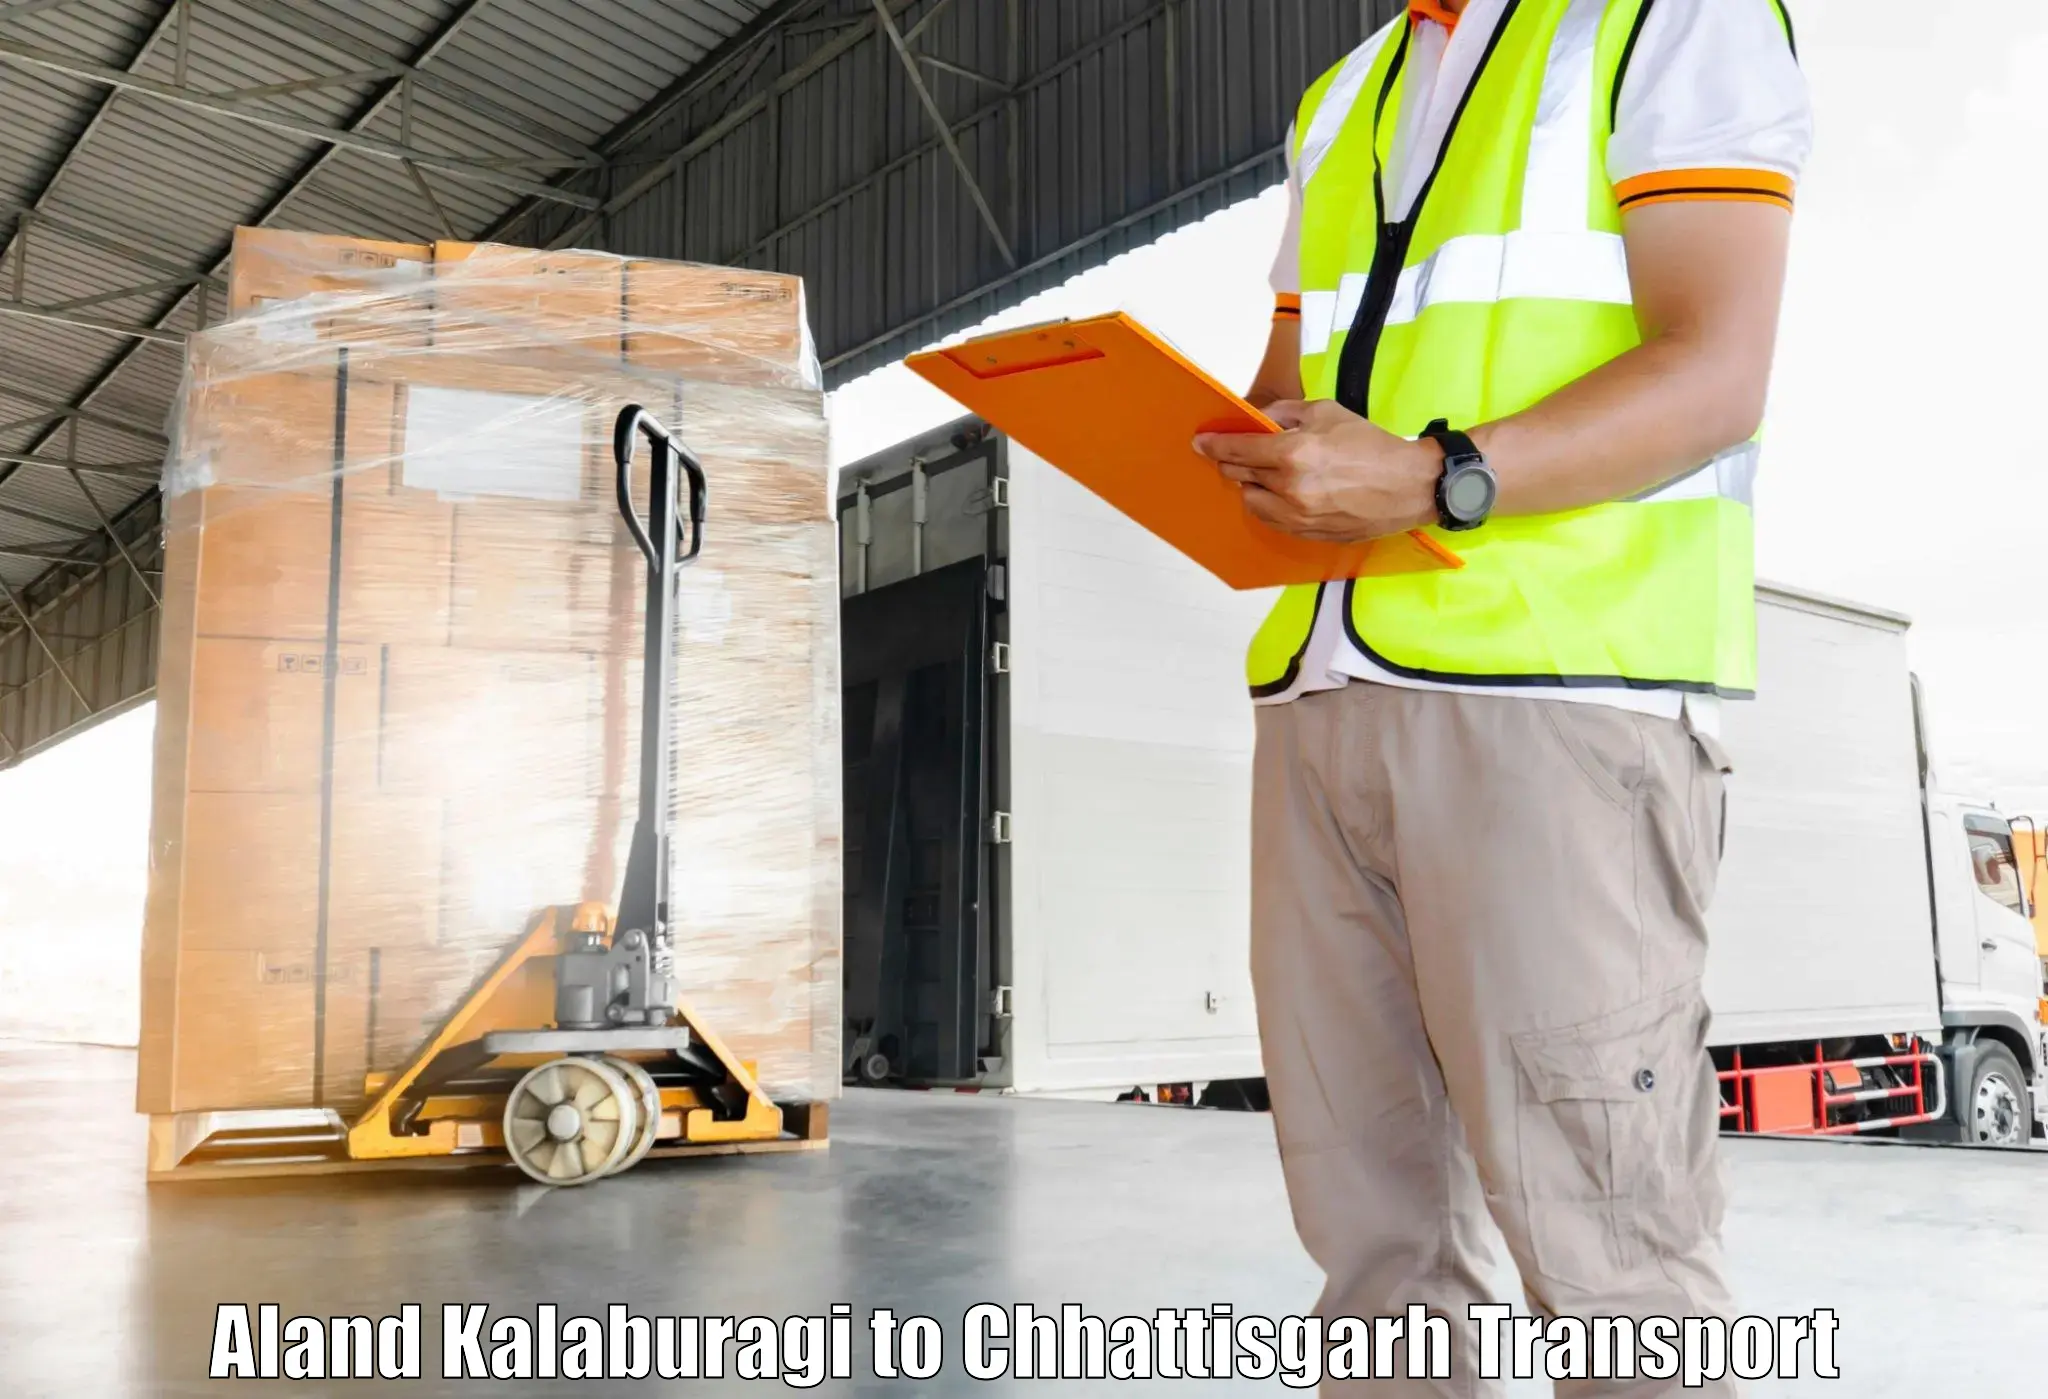 Container transport service Aland Kalaburagi to Sakti